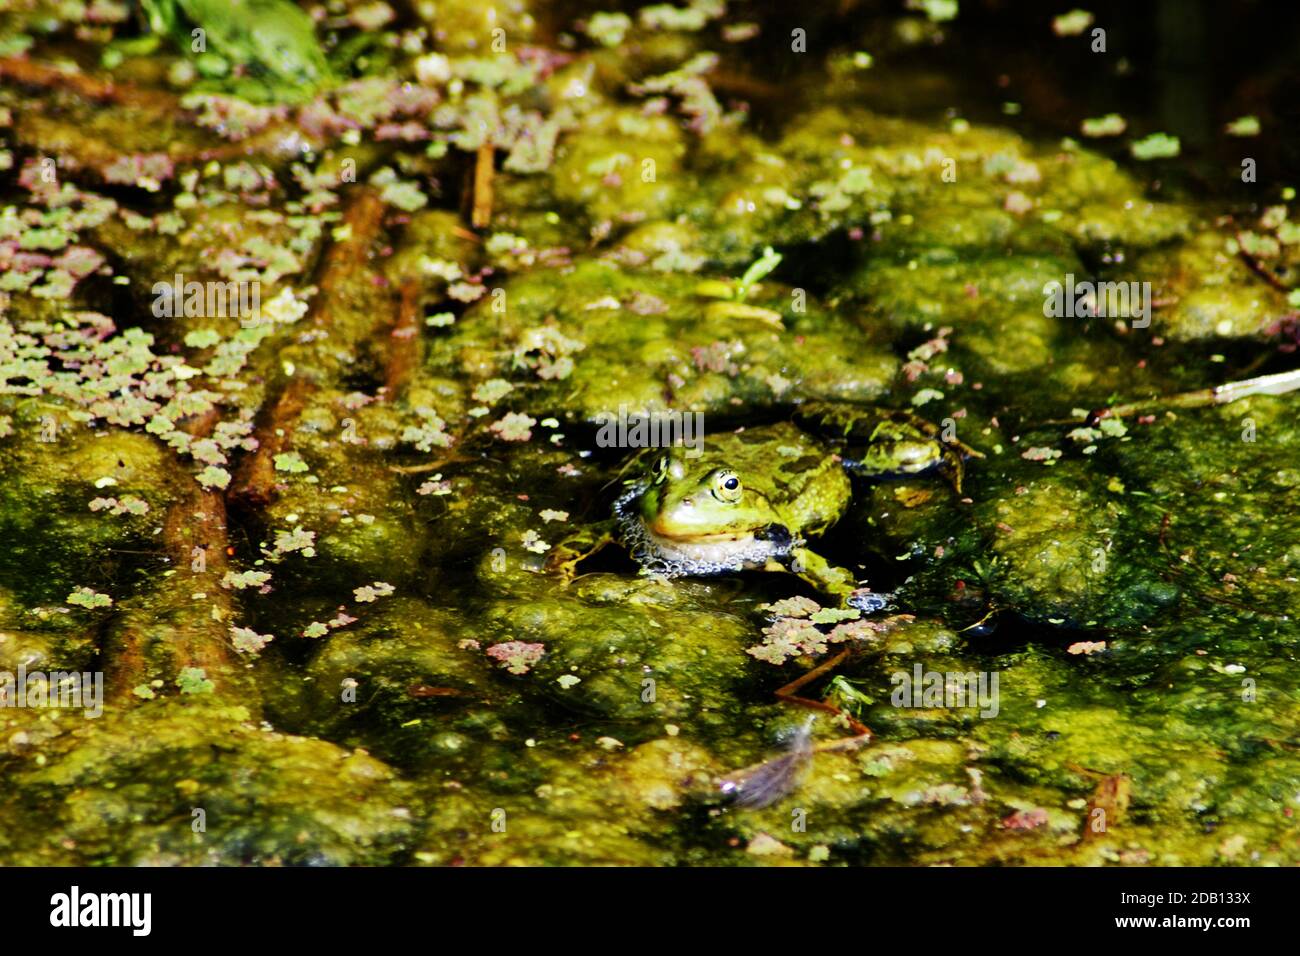 Marsh Frosch (Pelophylax ridibundus) Arten von Wasserfrosch aus Europa, Teile von Asien & eingeführt, um das Vereinigte Königreich. Größter Frosch in seinem Sortiment Stockfoto